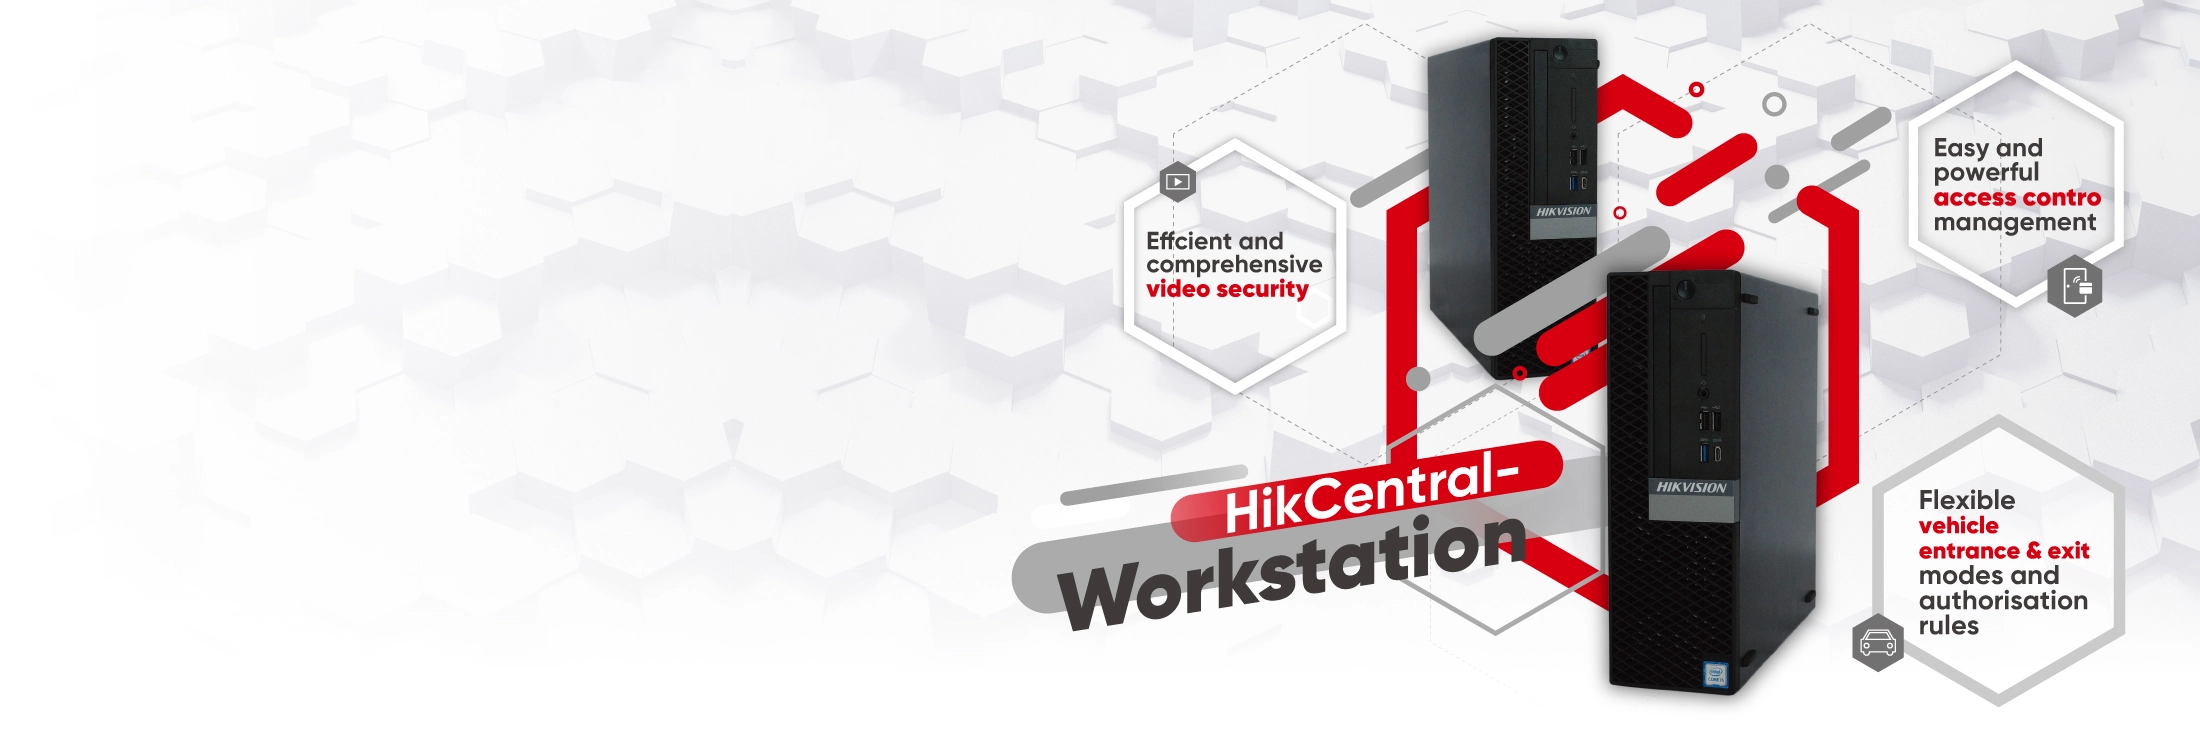 HikCentral-Workstation